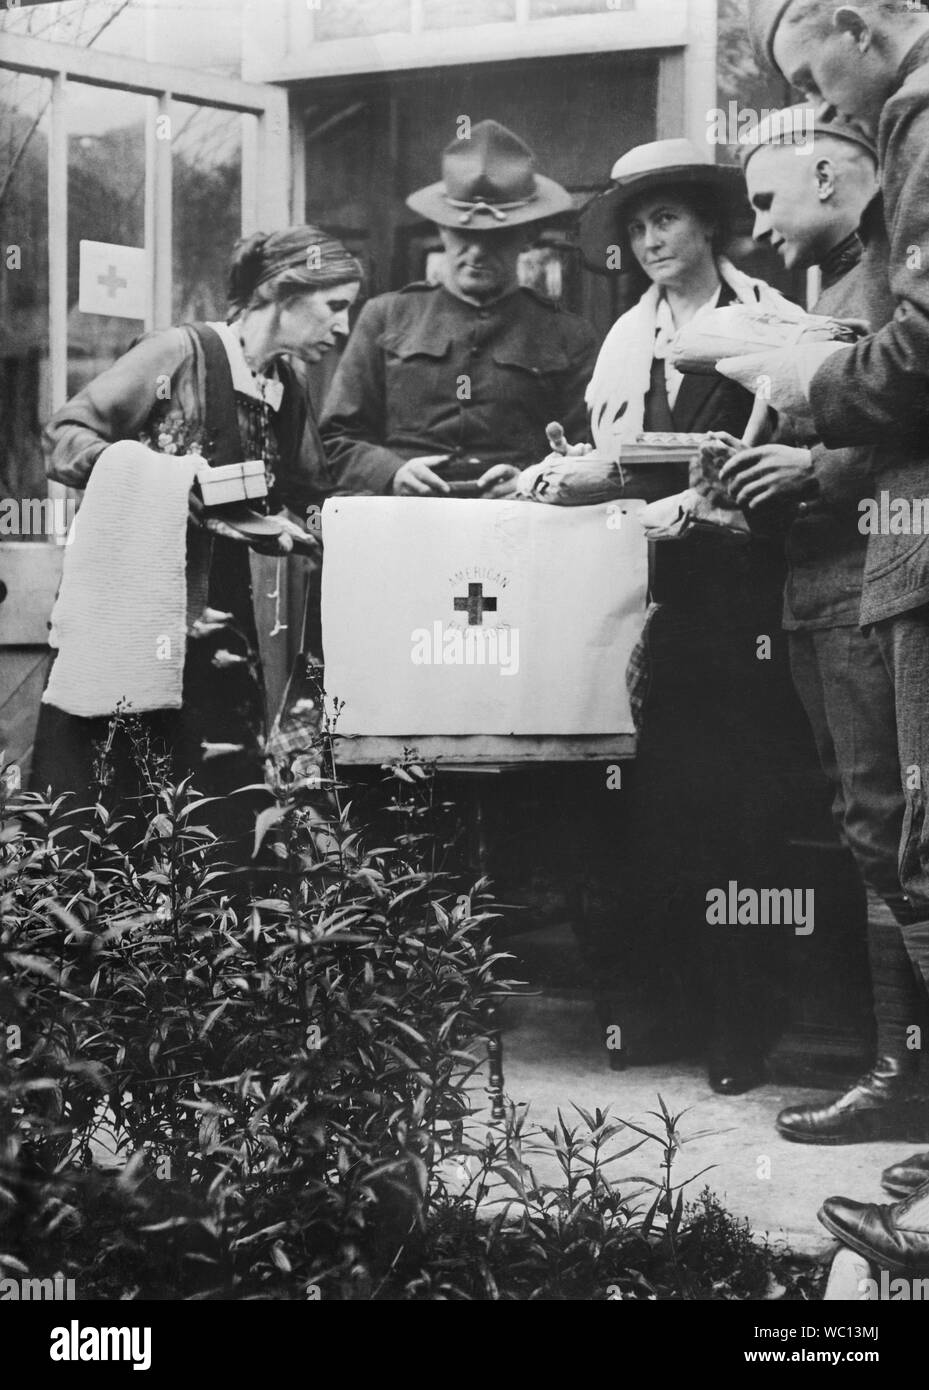 Amerikanische Armee Leutnant Robert E. Lee die Aufsicht über die Verpackung des Roten Kreuzes Care Paket von Frauen des Amerikanischen Roten Kreuzes Pflege Ausschuss, Newcastle, England, Großbritannien, Fotografie von American National Red Cross, November 1918 Stockfoto